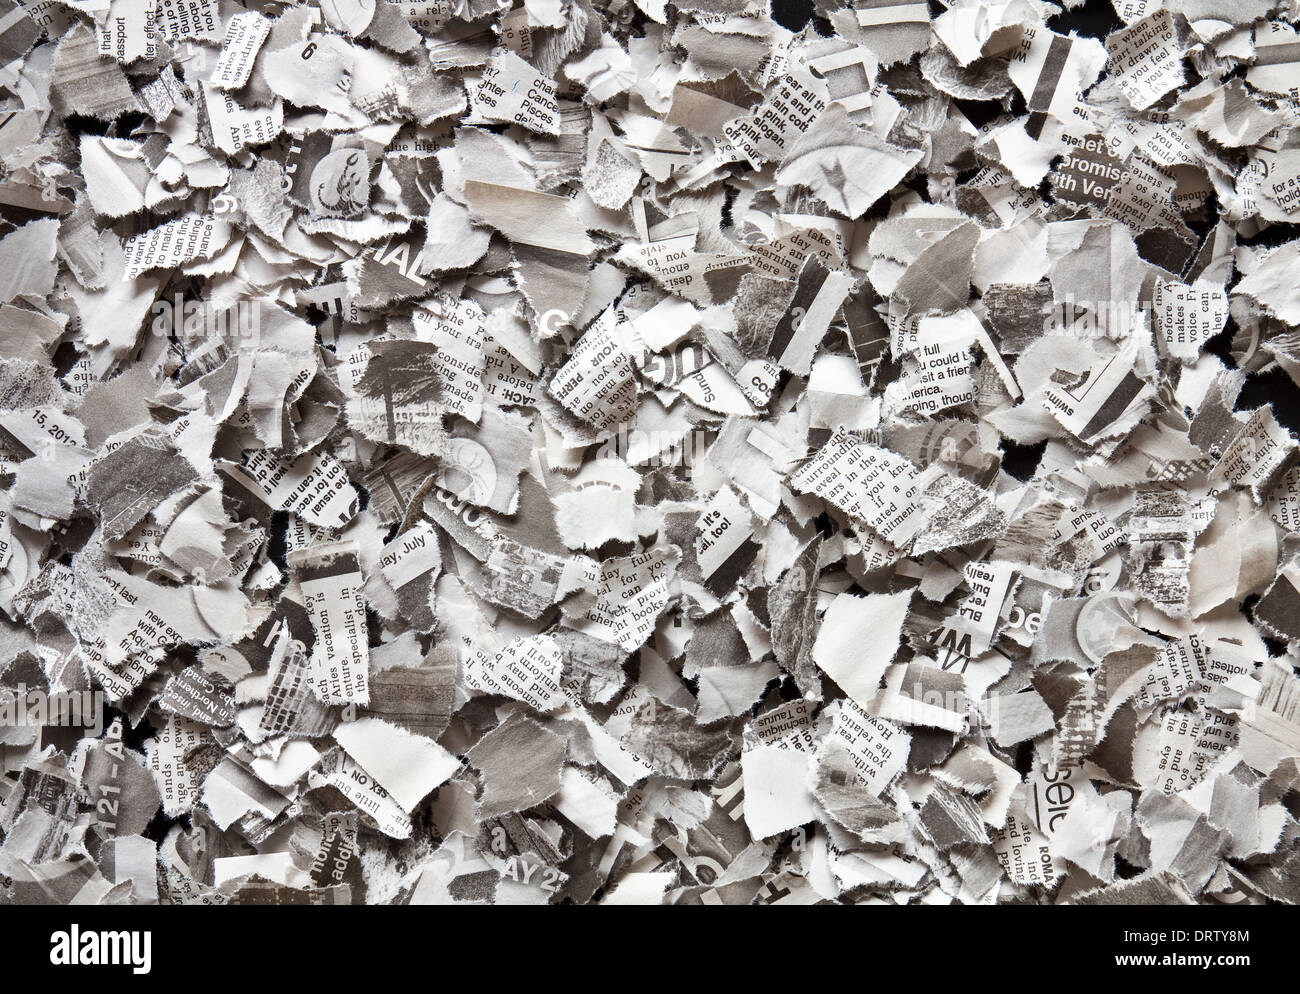 profundo gritar Propiedad Rompe en pequeños pedazos de papel de periódico reciclado Fotografía de  stock - Alamy